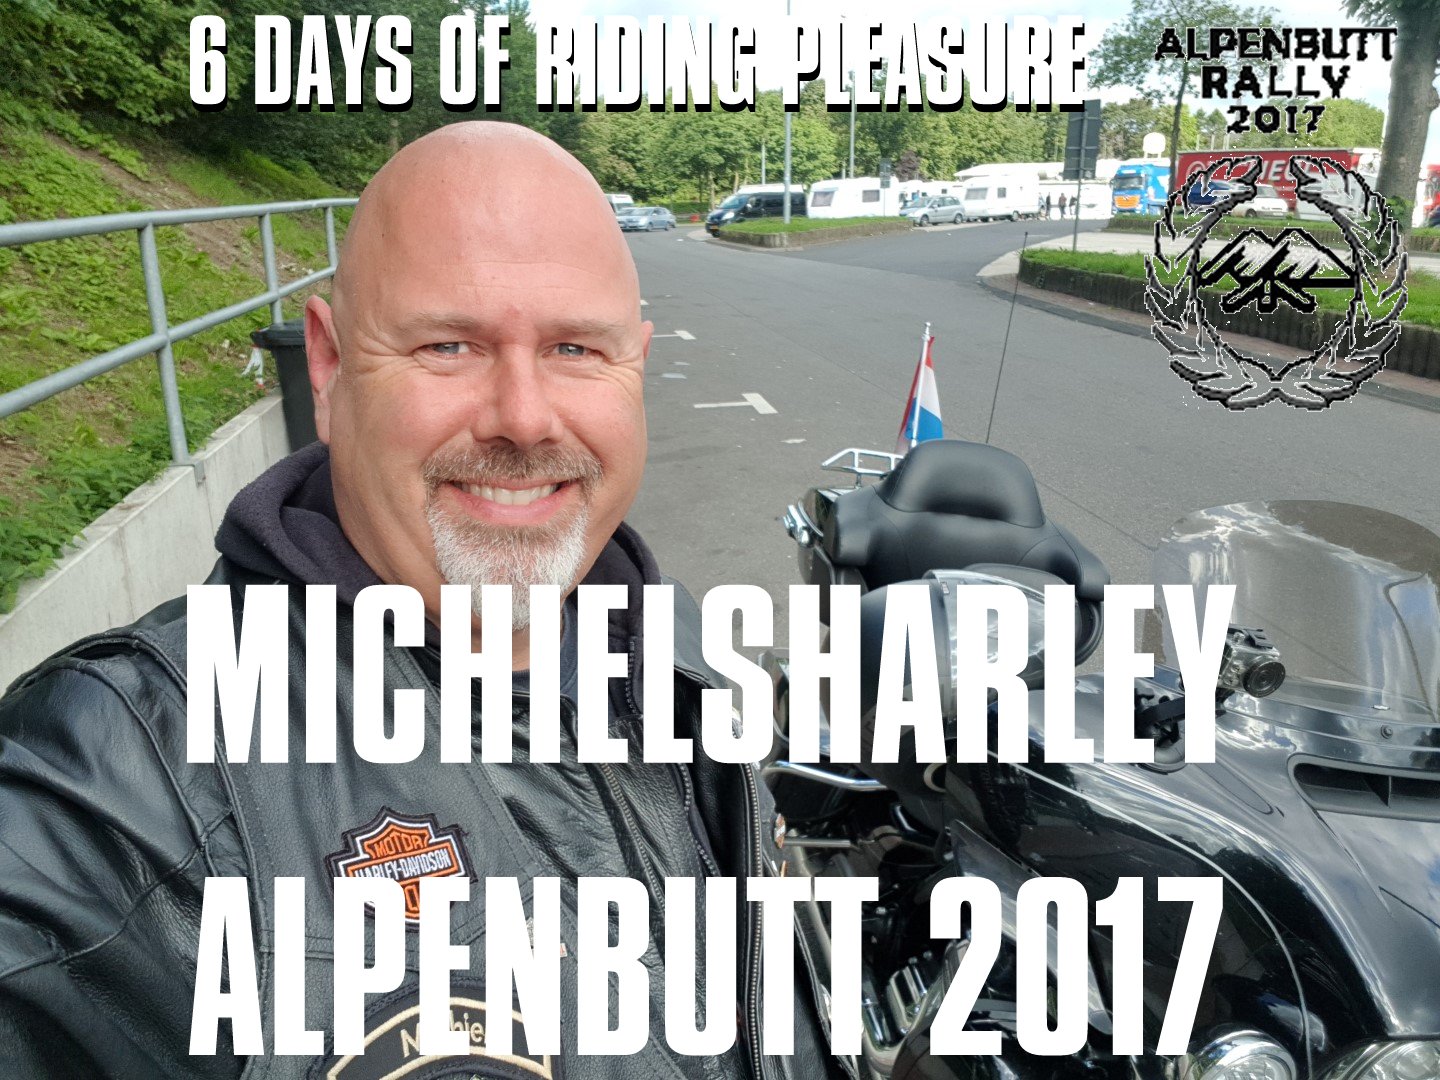 Alpen Butt Rally 2017